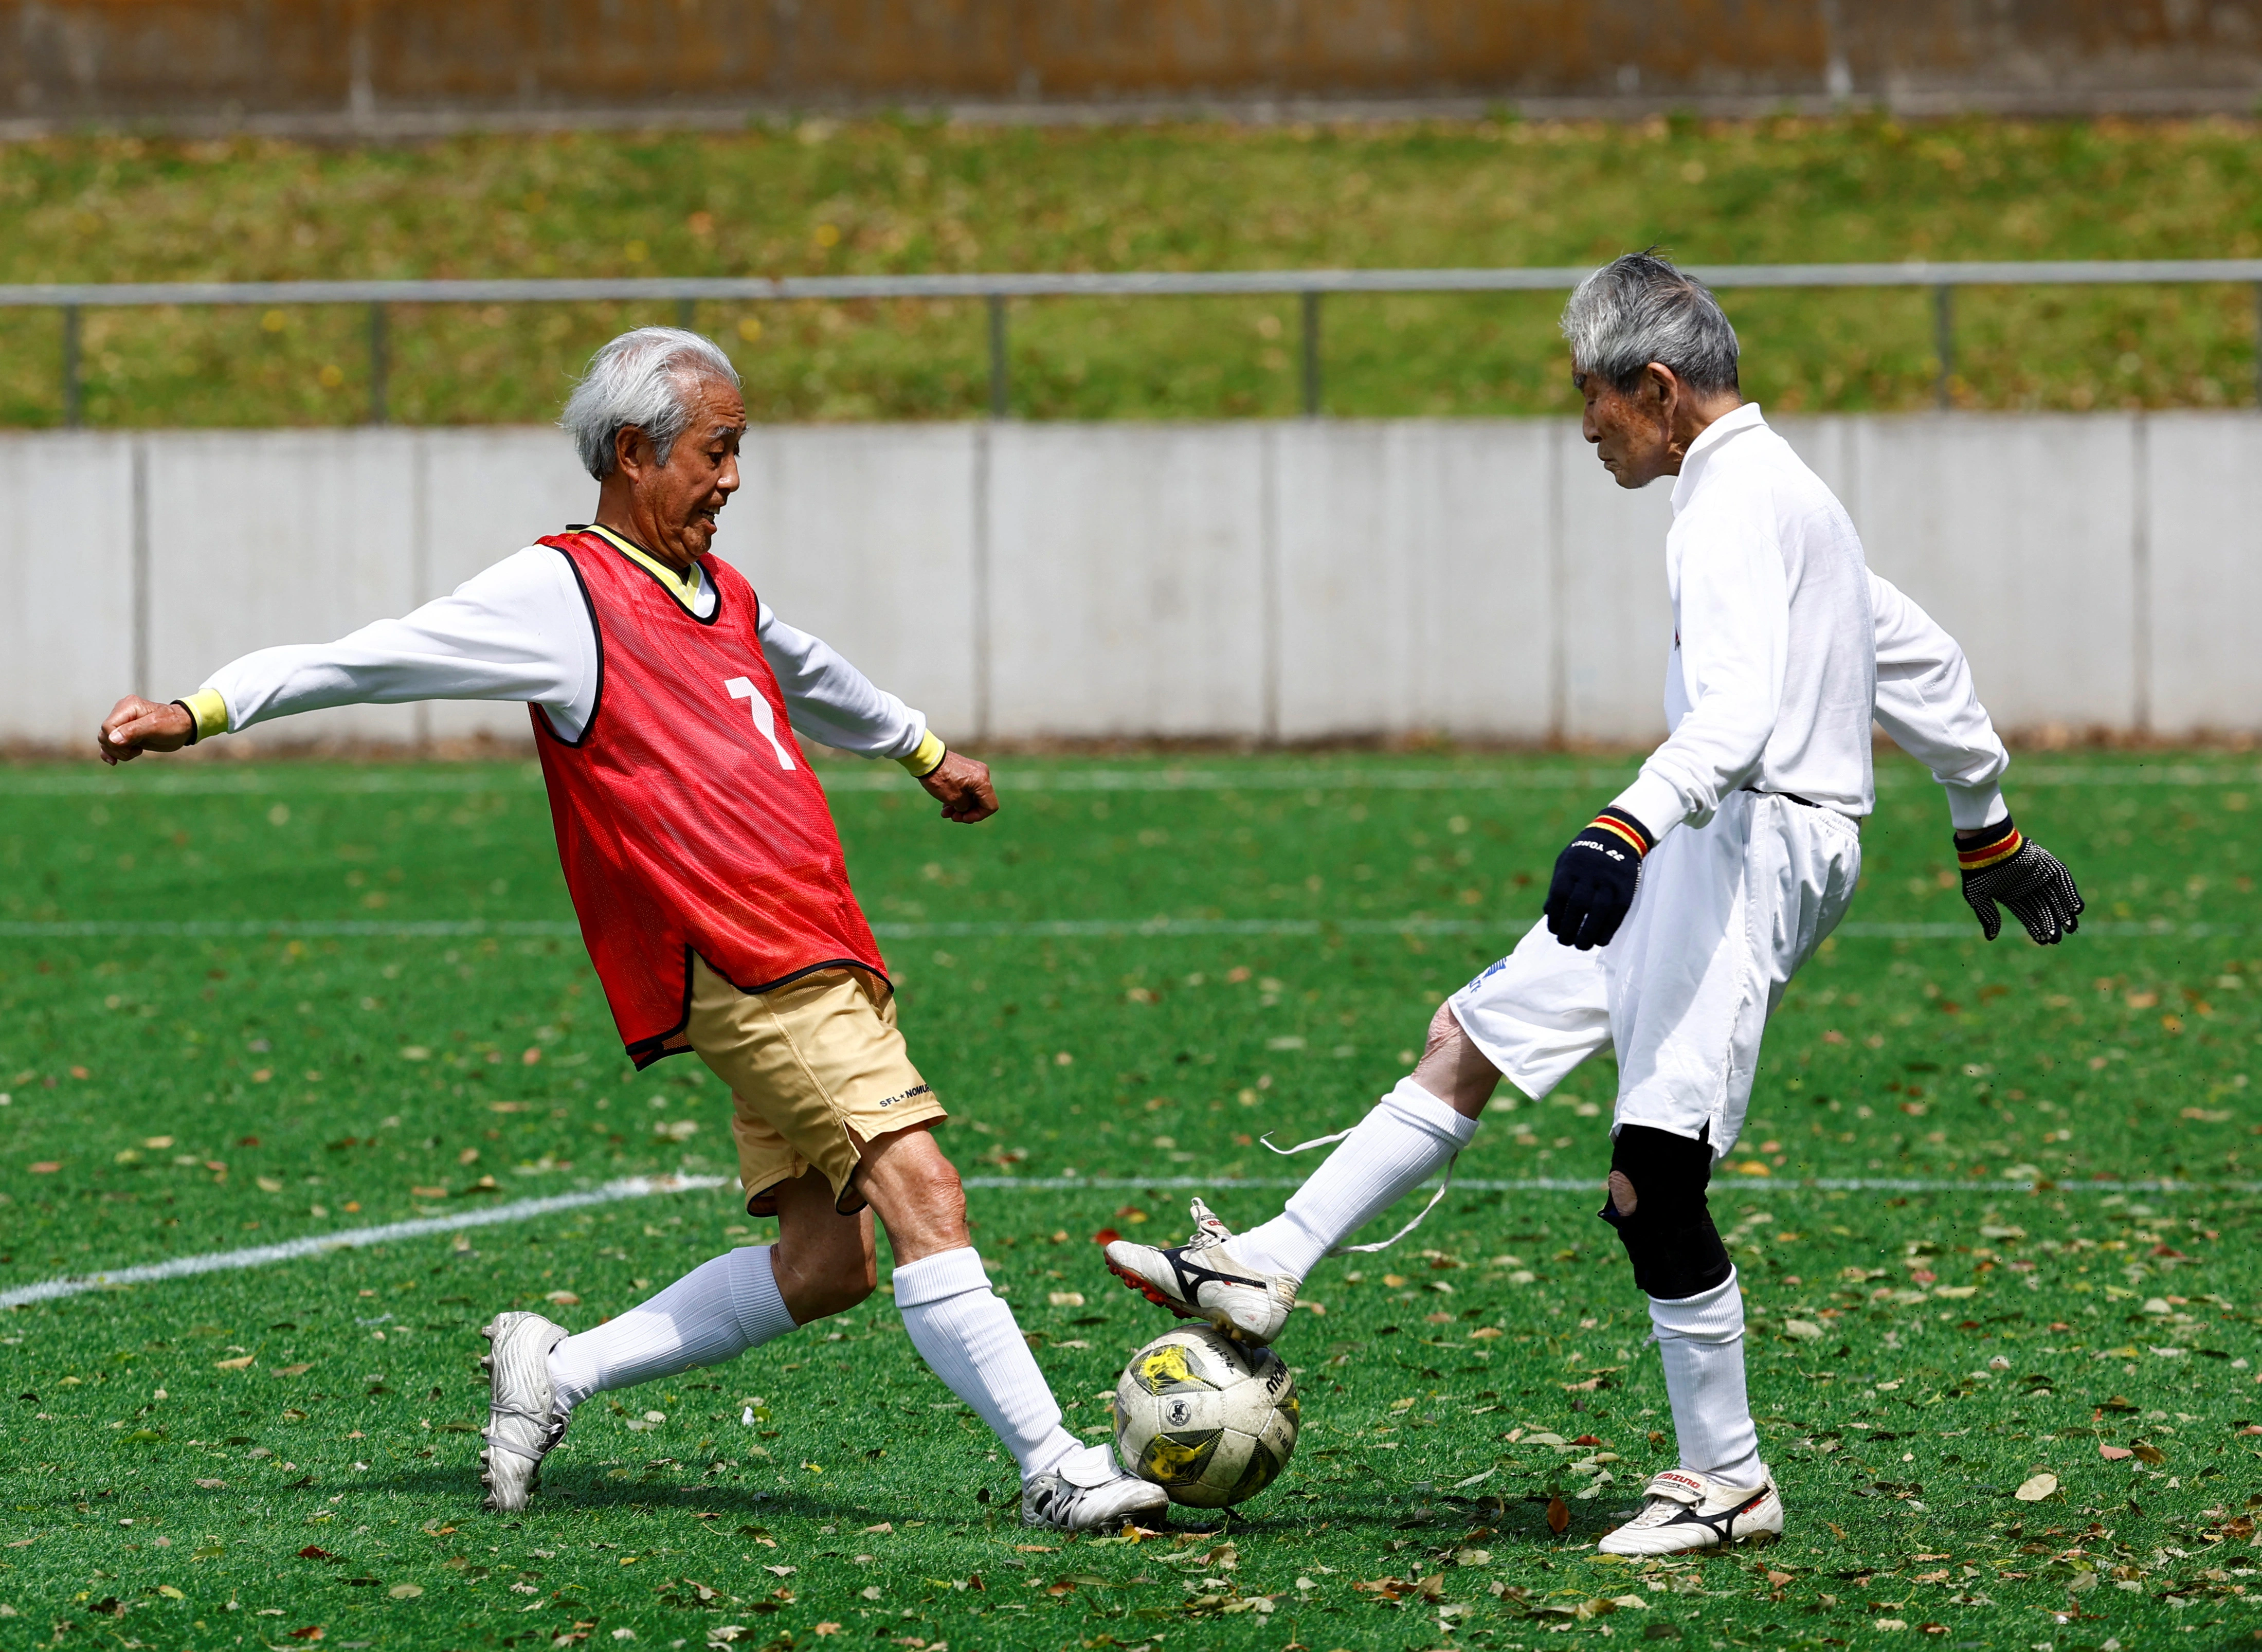 Sự nghiệp bóng đá đỉnh cao của ông Mutsuhiko Nomura đến nay đã qua 18 kỳ World Cup, chính xác là 70 năm.  Giờ đây, cựu cầu thủ đội tuyển quốc gia Nhật Bản với mái tóc bạc là thành viên của đội bóng hoàn toàn mới dành cho những người trên 80 tuổi của giải “Soccer For Life” (SFL) của Tokyo, đã chơi trận đầu tiên trong tháng này.